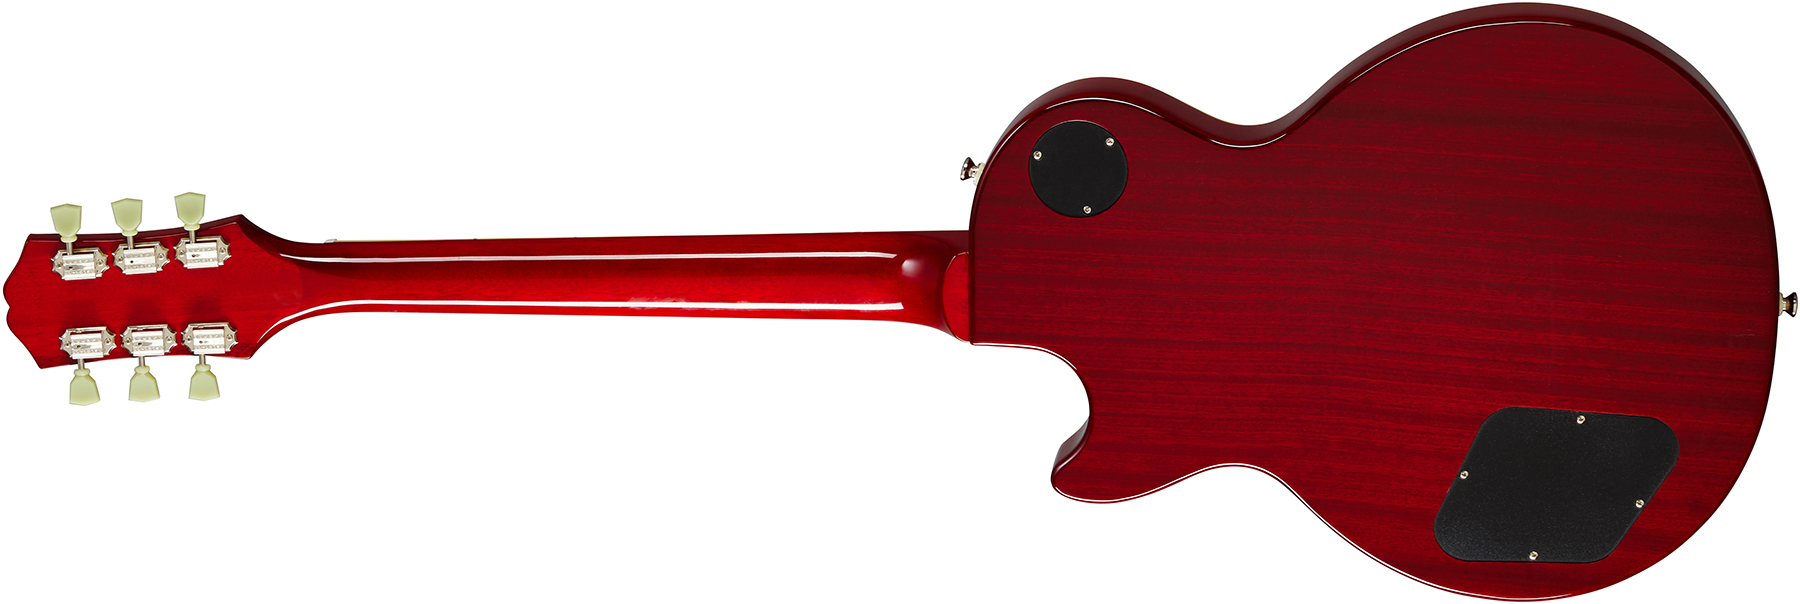 Epiphone Les Paul Standard 50s 2h Ht Rw - Vintage Sunburst - Single cut electric guitar - Variation 2